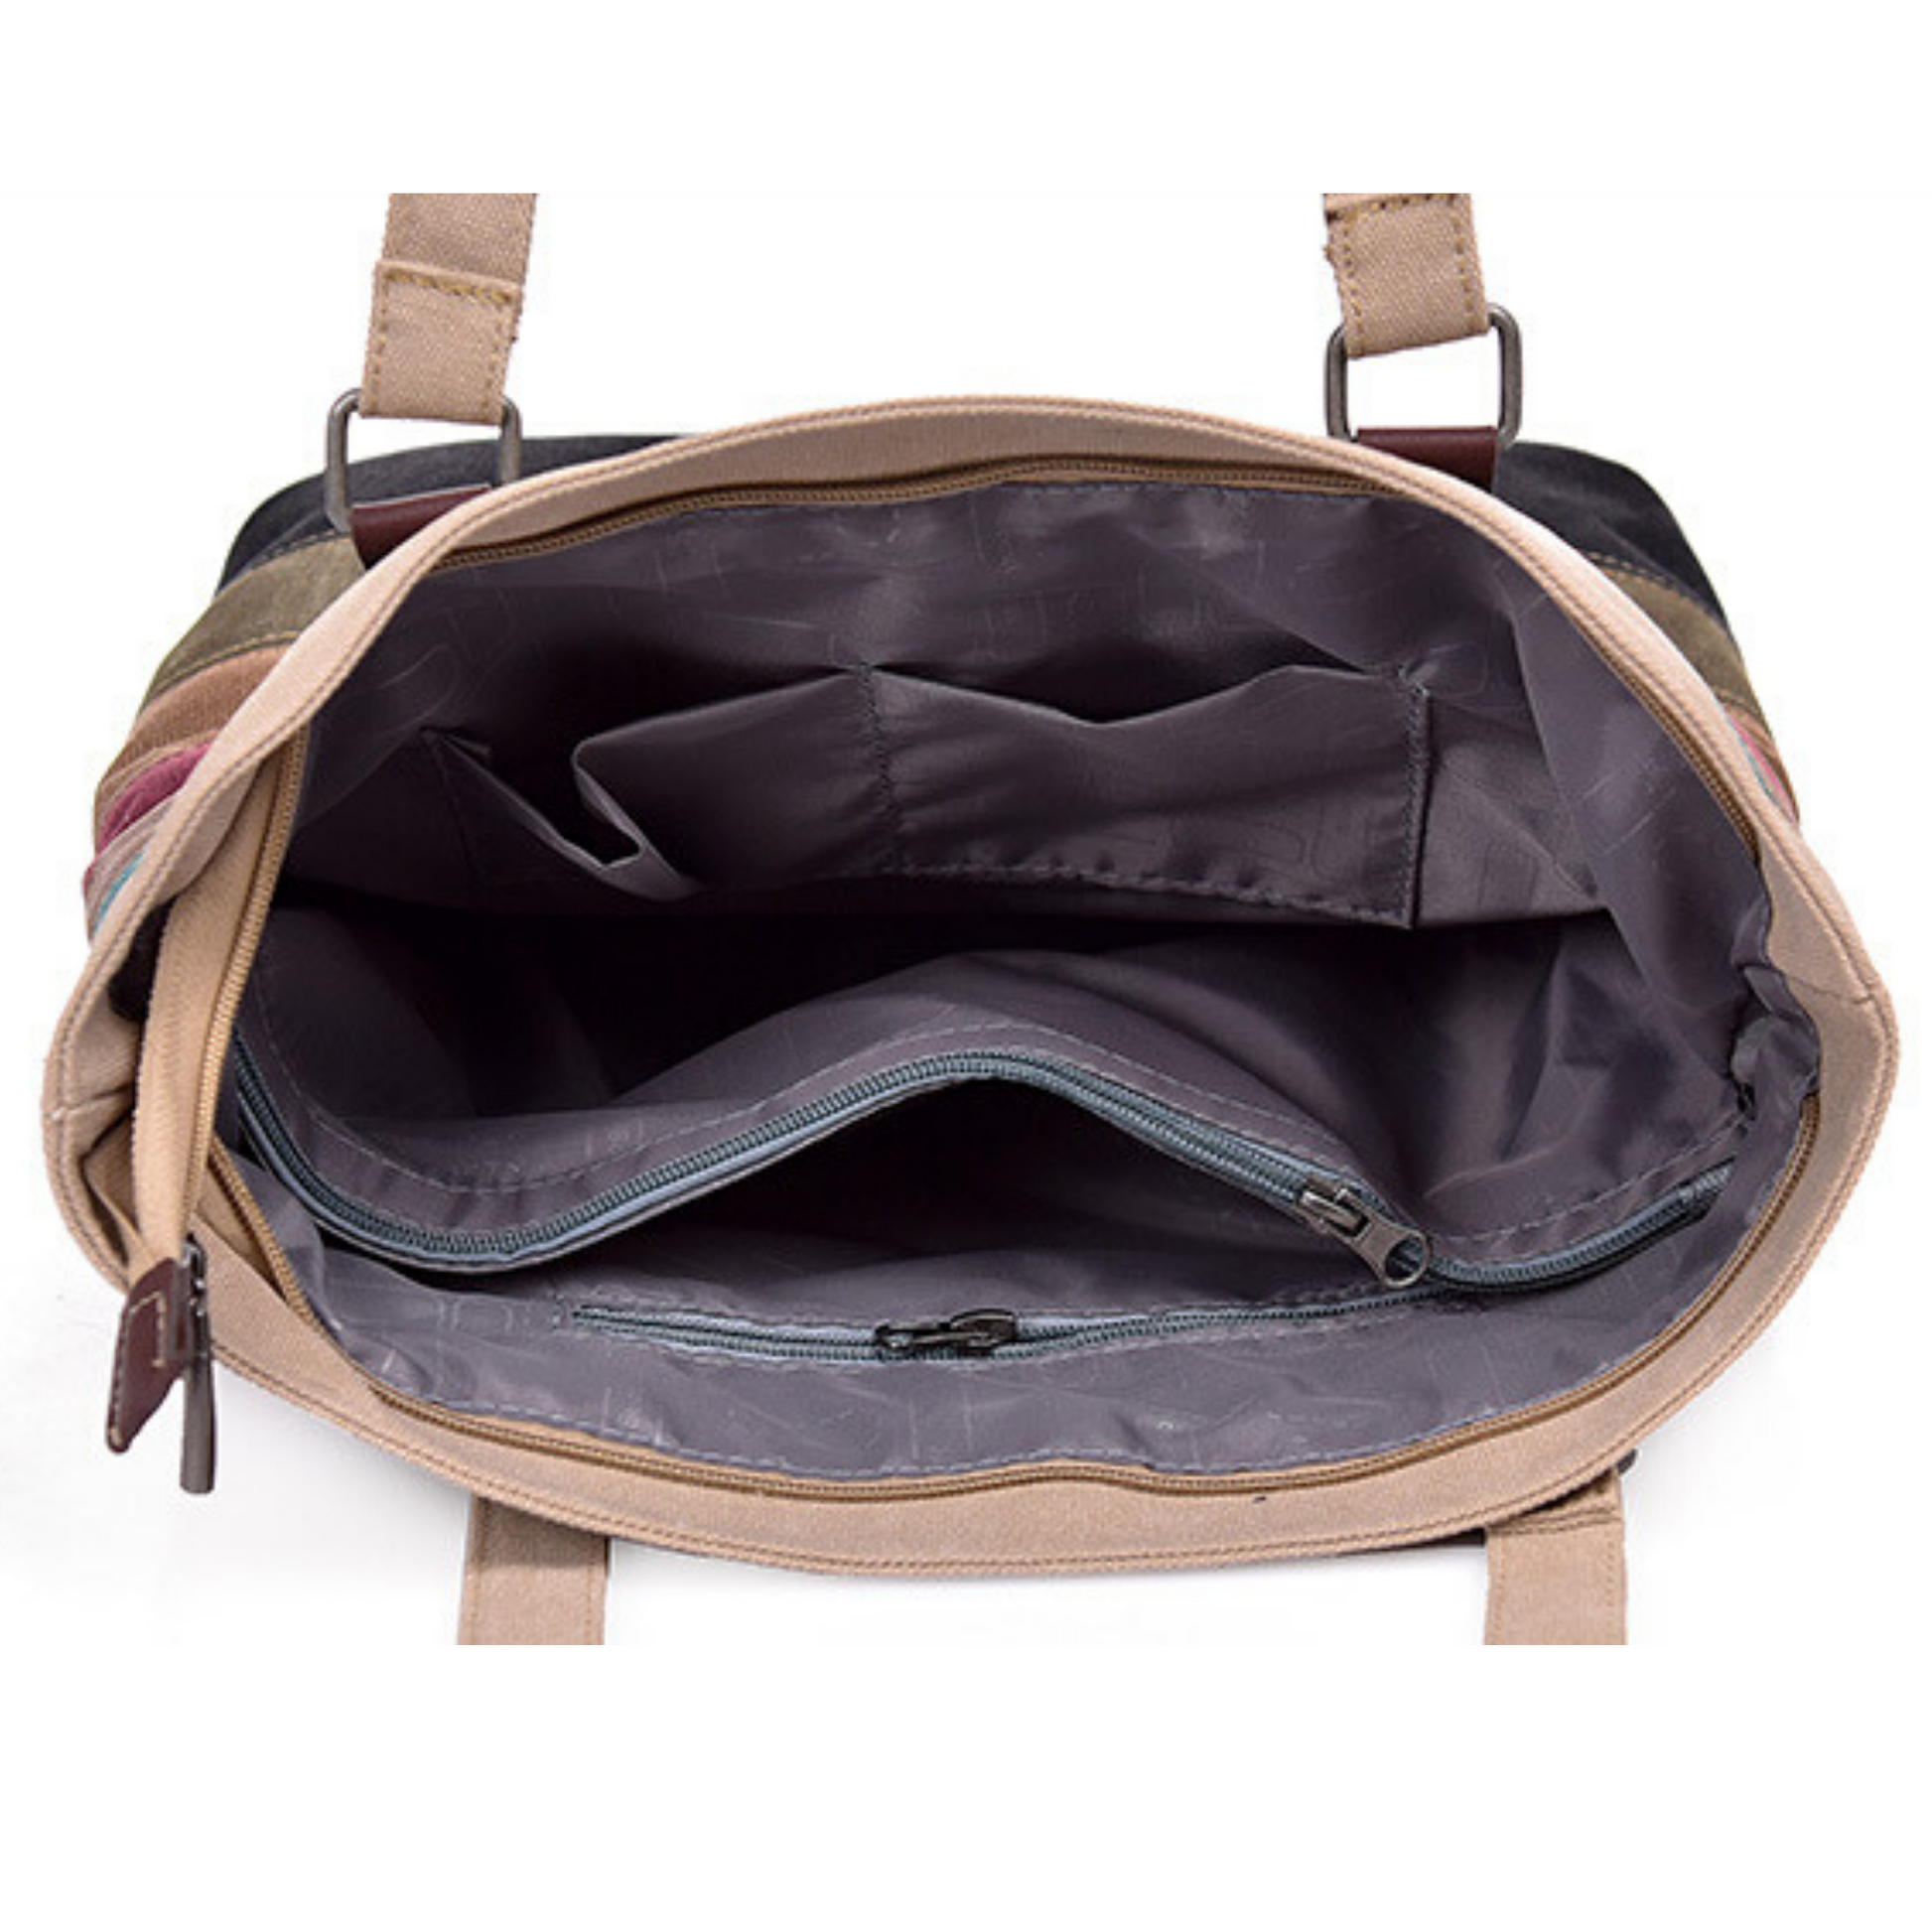 New Large Multi Colour Oxford Cotton Carry Shoulder Messenger Satchel Tote Bag - BrandsByG